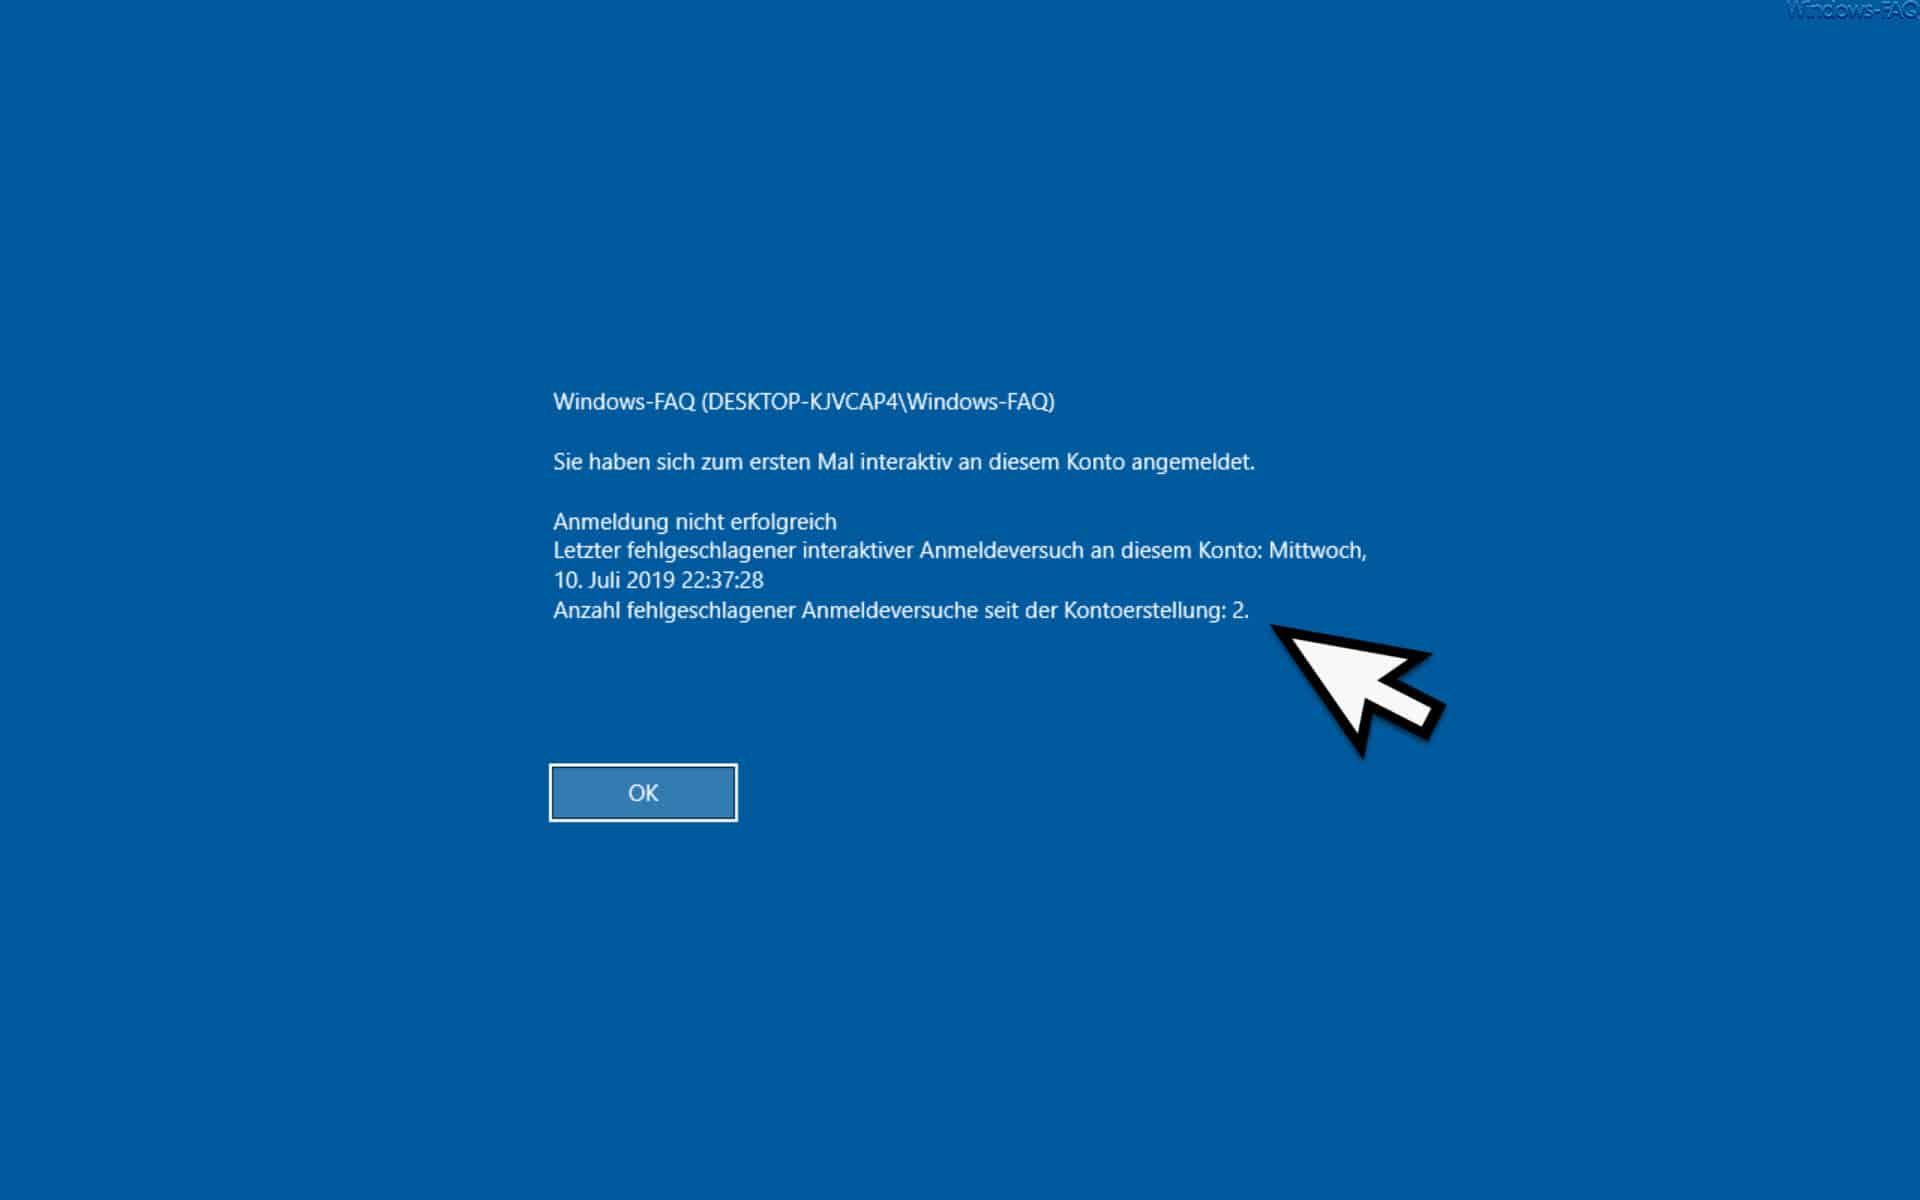 Anzahl fehlgeschlagener Anmeldungen am Windows PC anzeigen lassen